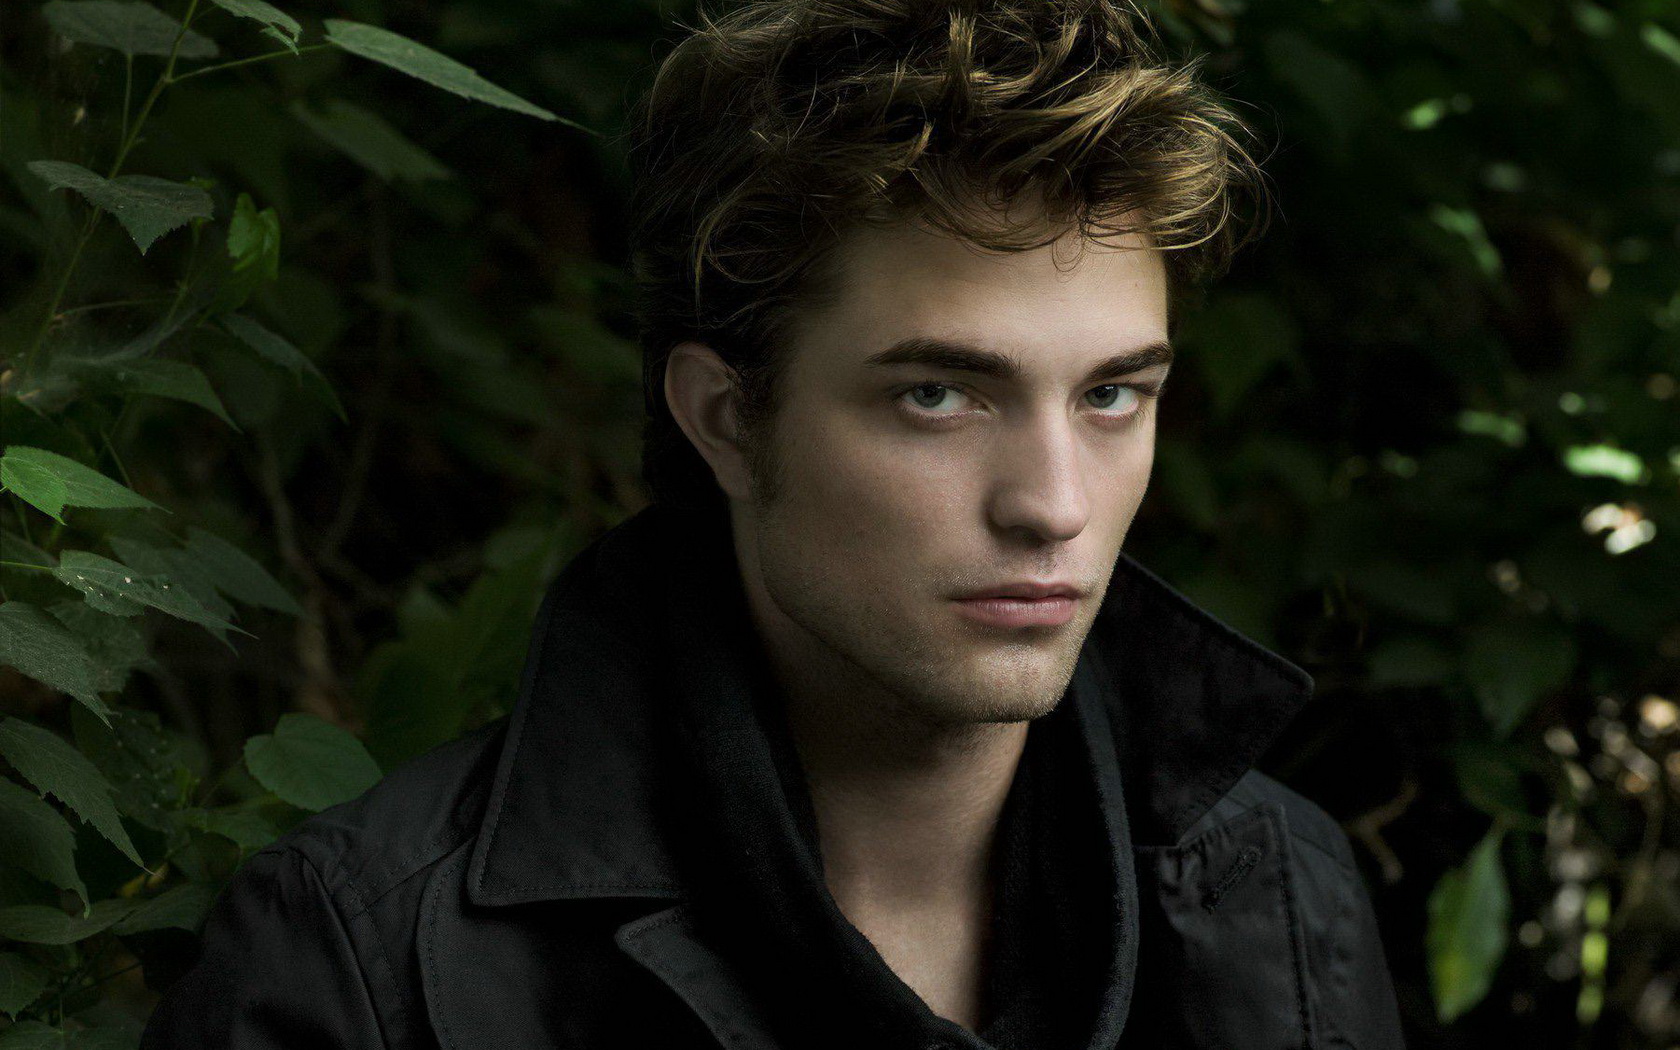 Vampirul Edward a devenit cunoscut dupa ce a jucat in franciza Twilight